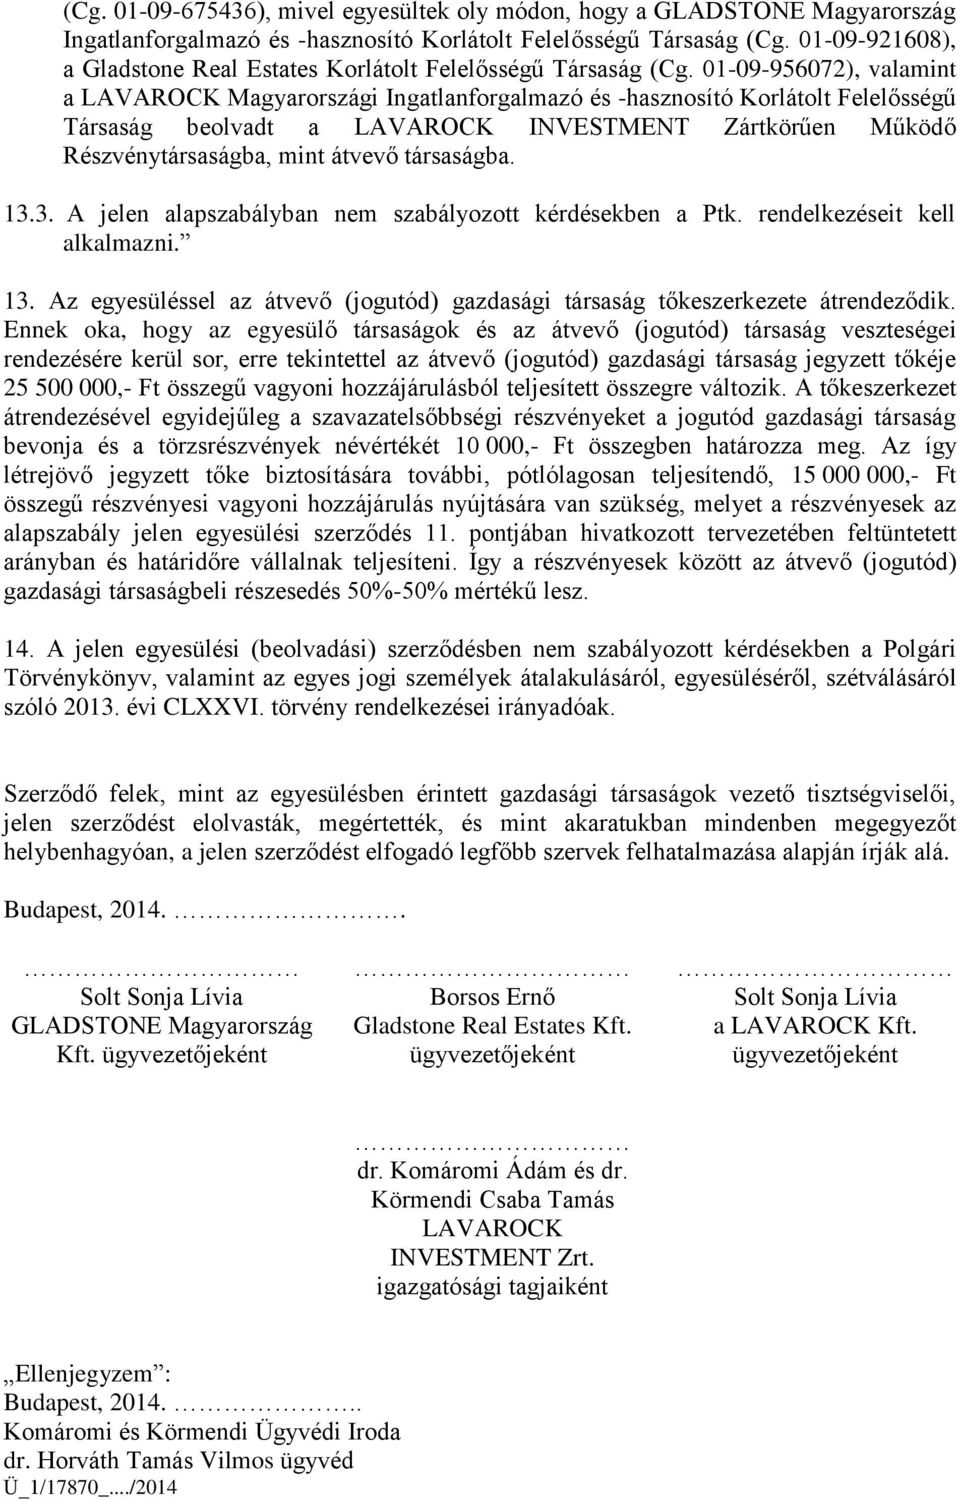 01-09-956072), valamint a LAVAROCK Magyarországi Ingatlanforgalmazó és -hasznosító Korlátolt Felelősségű Társaság beolvadt a LAVAROCK INVESTMENT Zártkörűen Működő Részvénytársaságba, mint átvevő